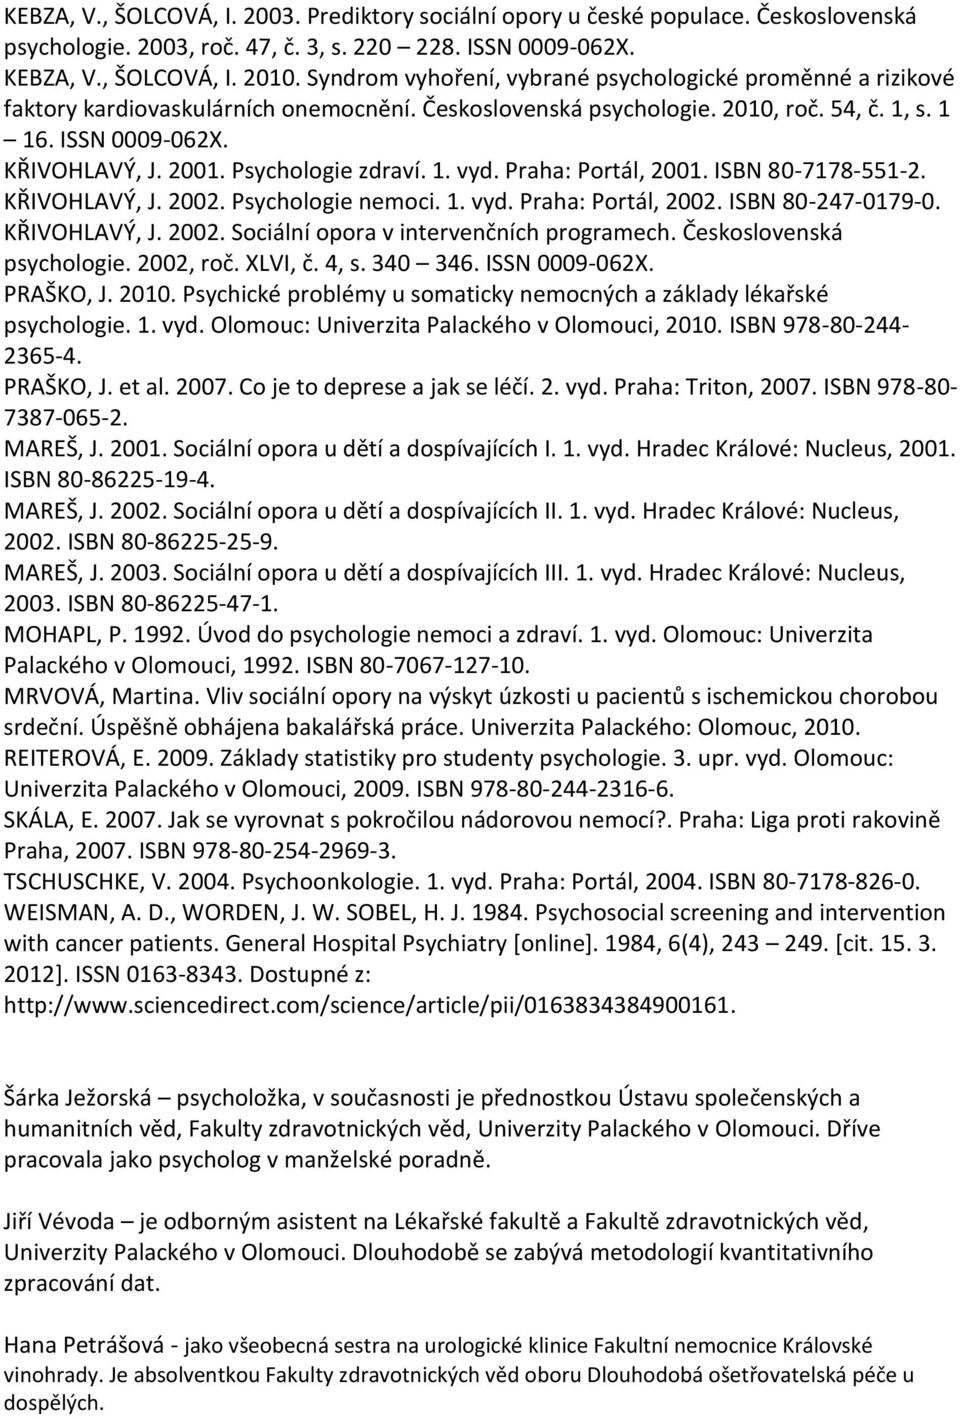 Psychologie zdraví. 1. vyd. Praha: Portál, 2001. ISBN 80-7178-551-2. KŘIVOHLAVÝ, J. 2002. Psychologie nemoci. 1. vyd. Praha: Portál, 2002. ISBN 80-247-0179-0. KŘIVOHLAVÝ, J. 2002. Sociální opora v intervenčních programech.